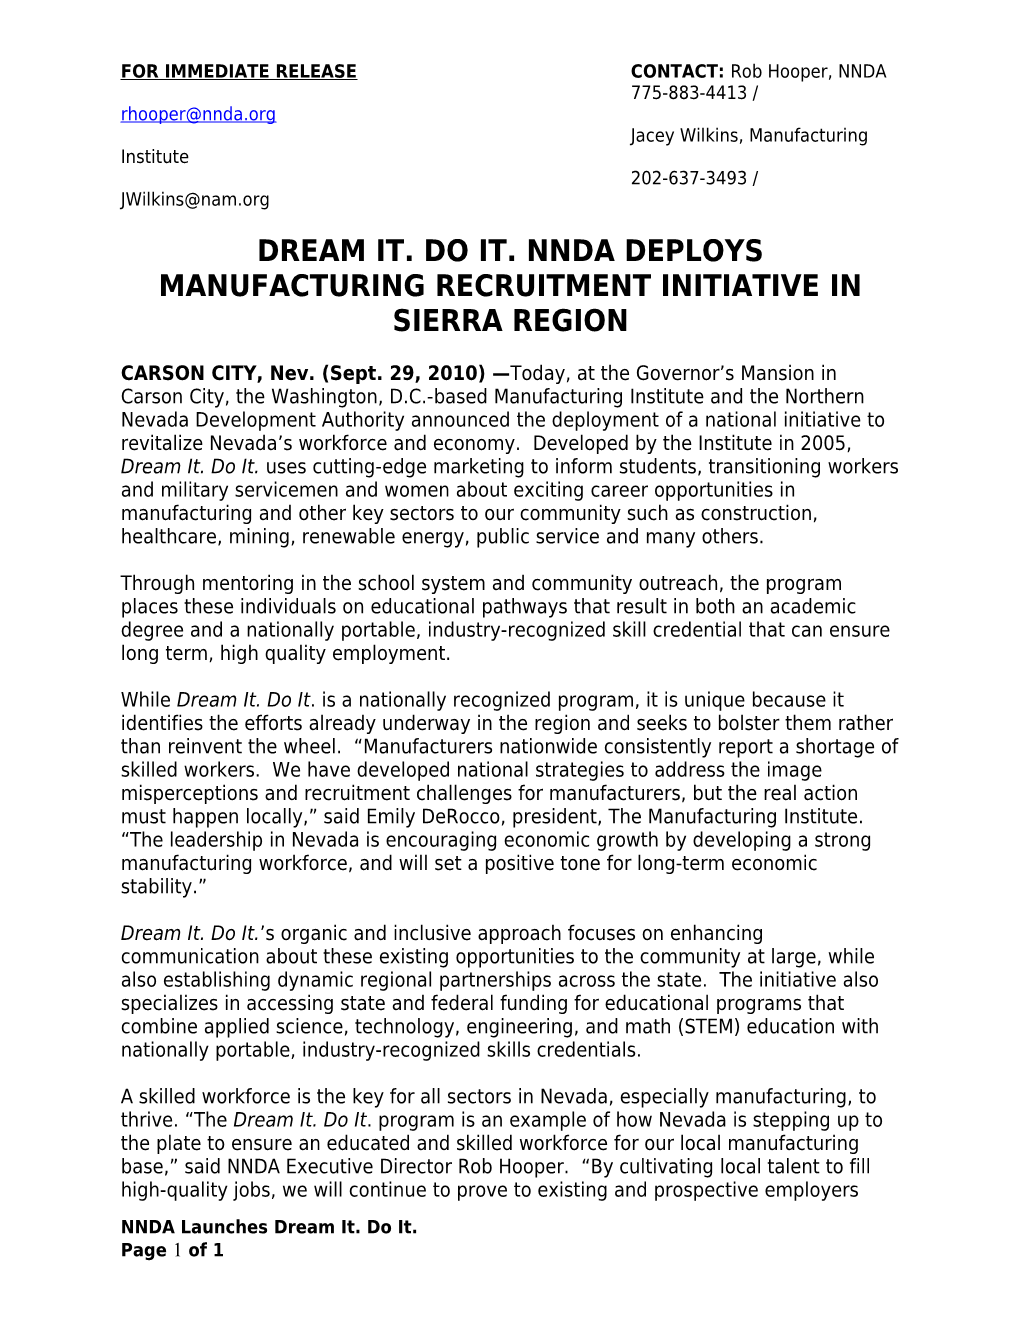 Dream It. Do It. Nnda Deploys Manufacturing Recruitment Initiative in Sierra Region